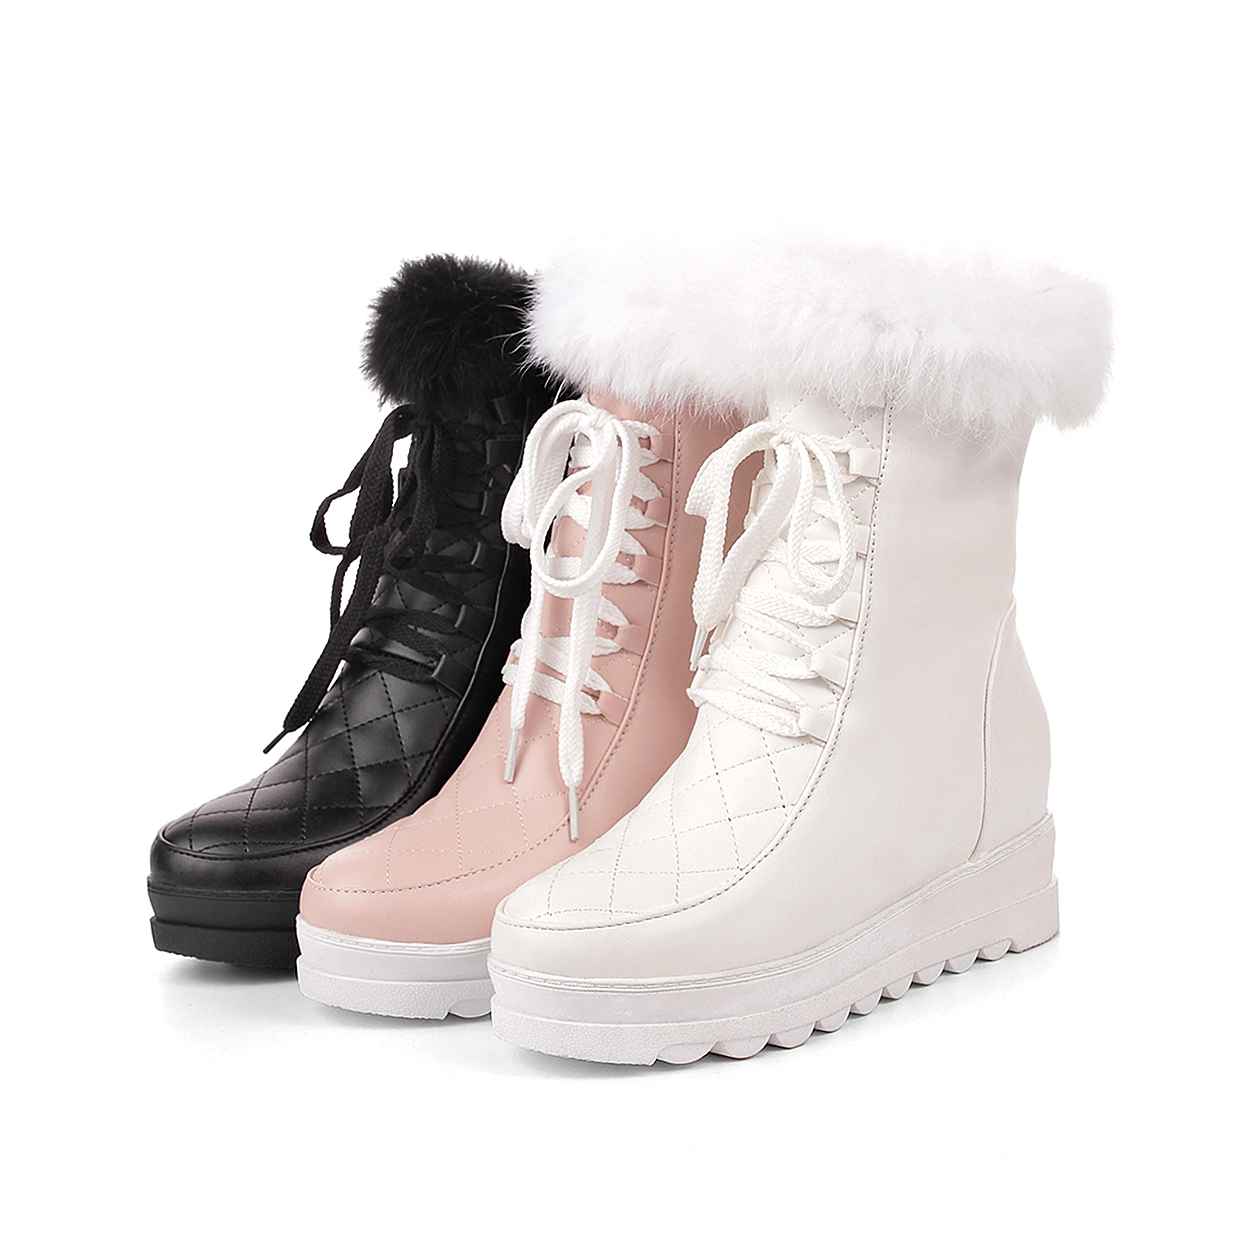 2015冬季新款内增高雪地靴毛毛靴甜美坡跟保暖女靴平底系带中筒靴折扣优惠信息